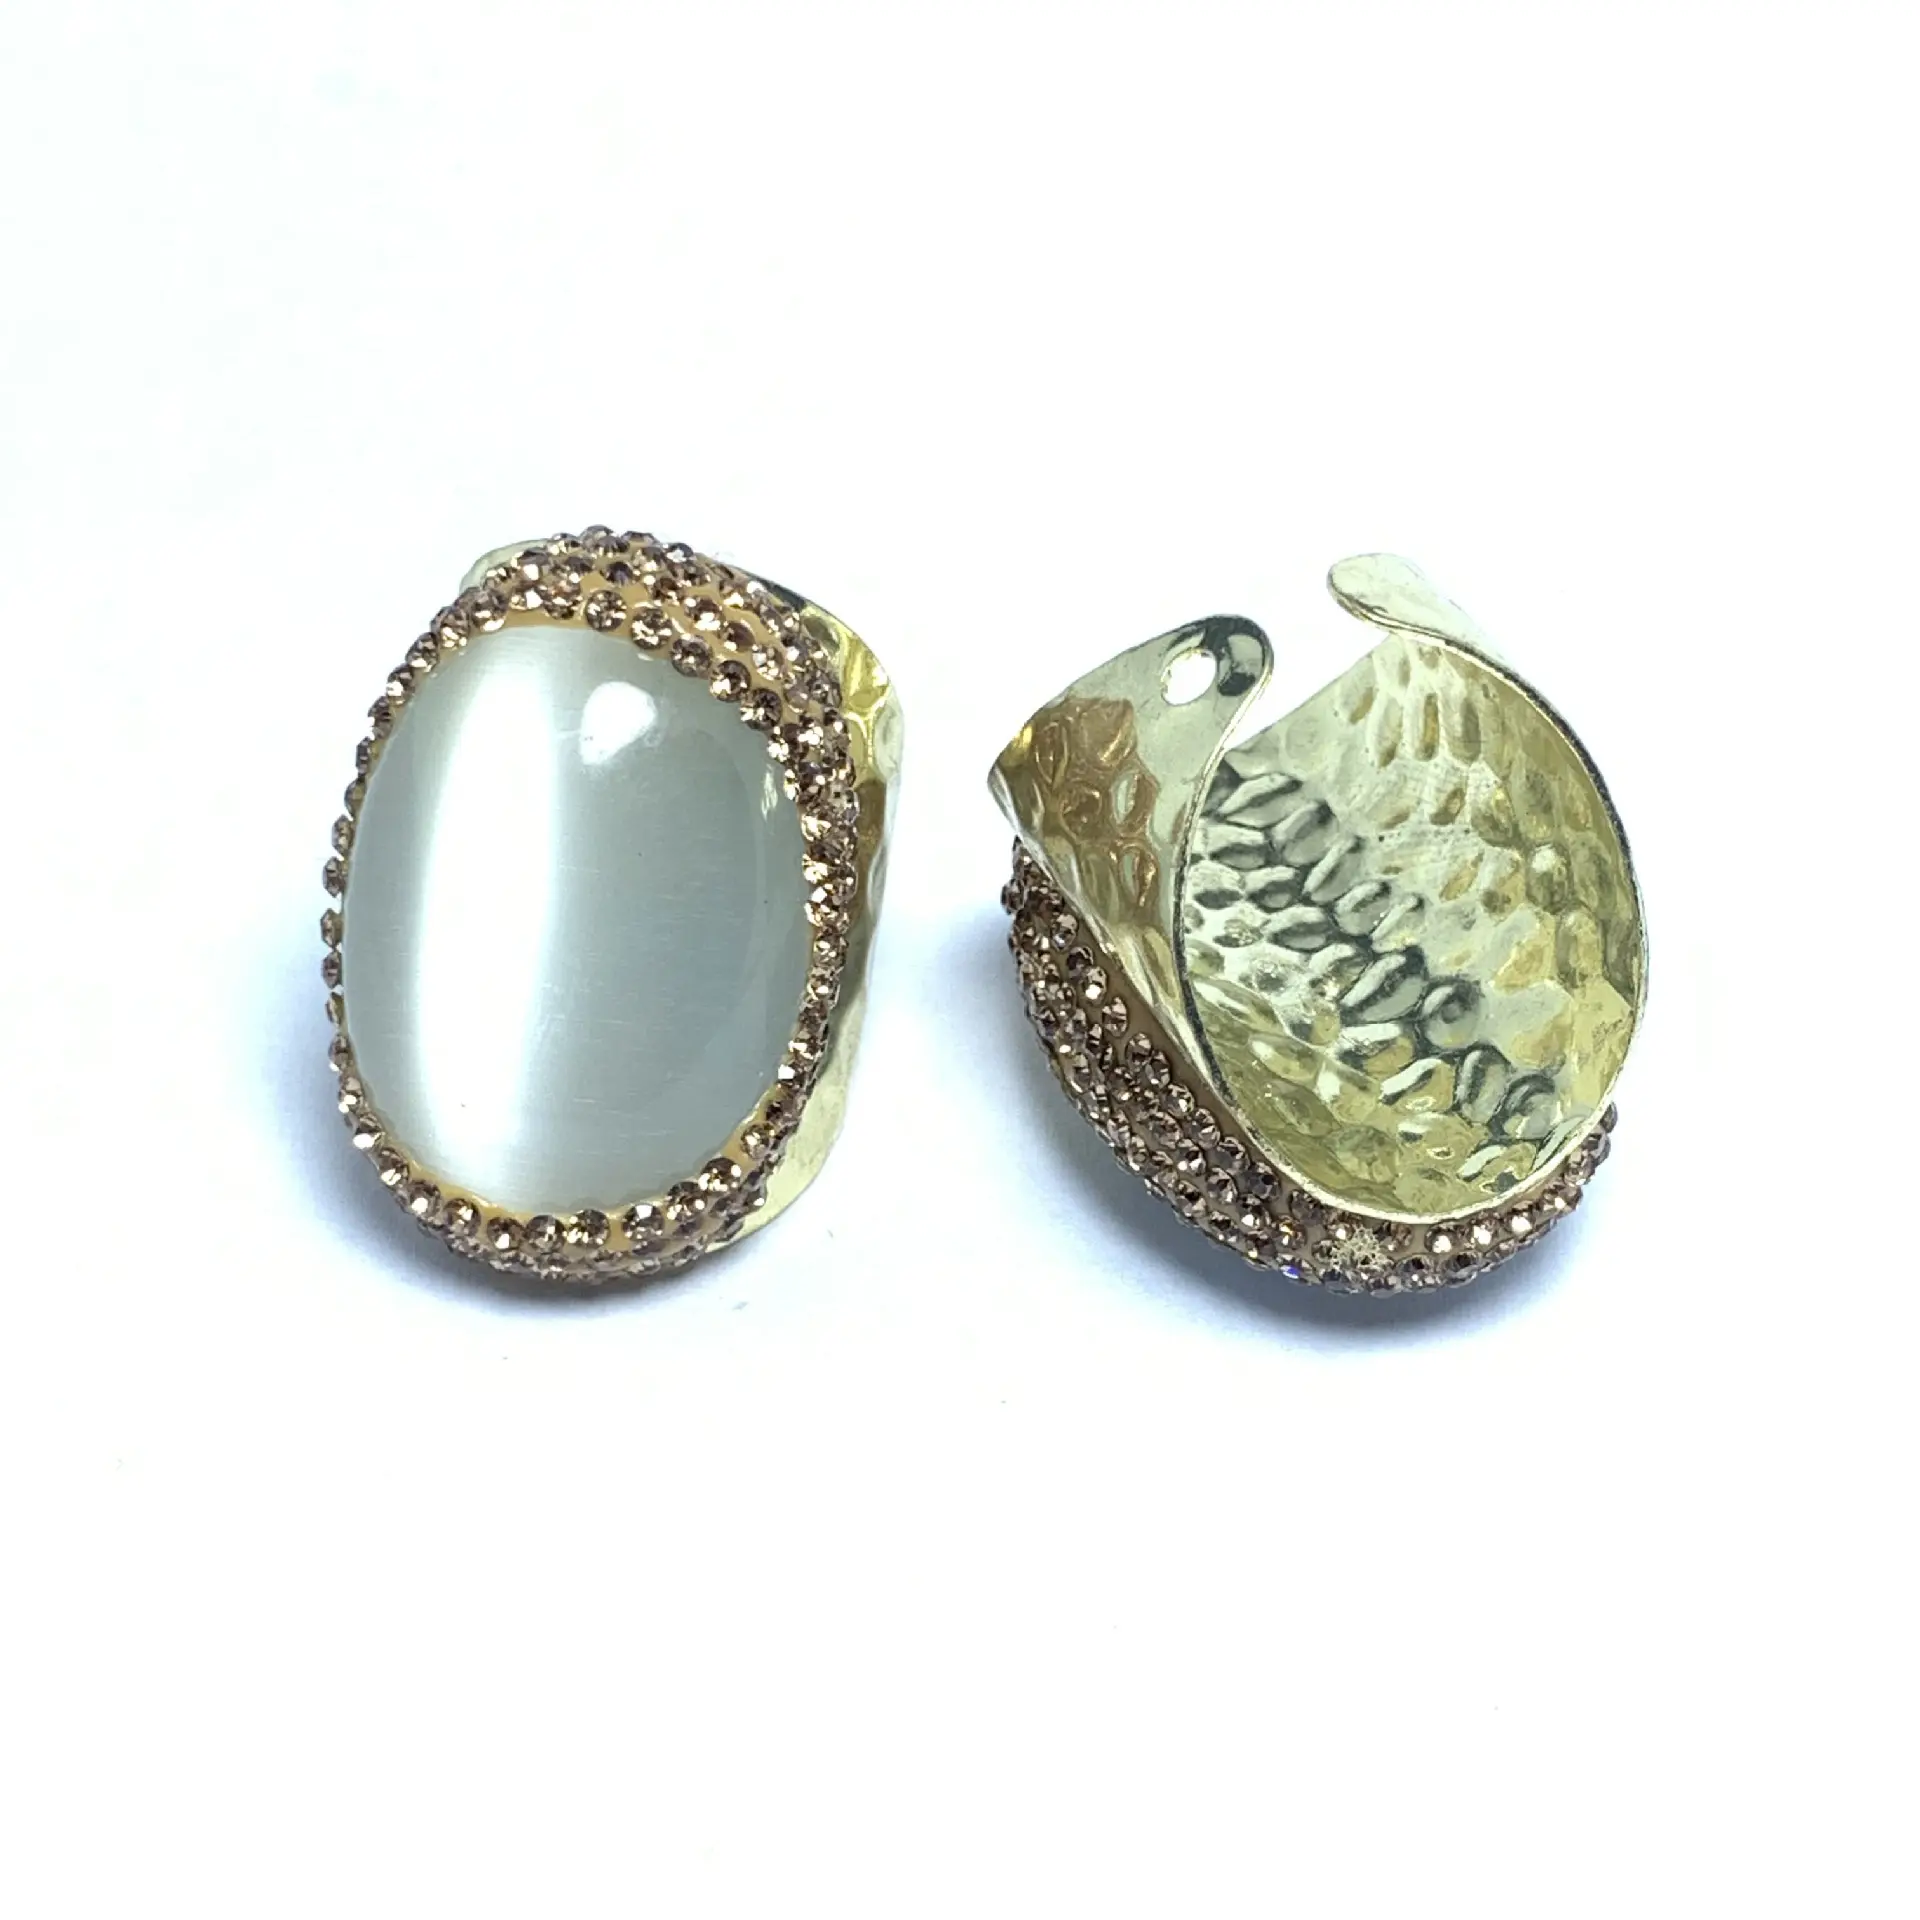 A172 egg shaped gold diamond pave ring hot gemstone cat eye stone gemstone ring open adjustable size